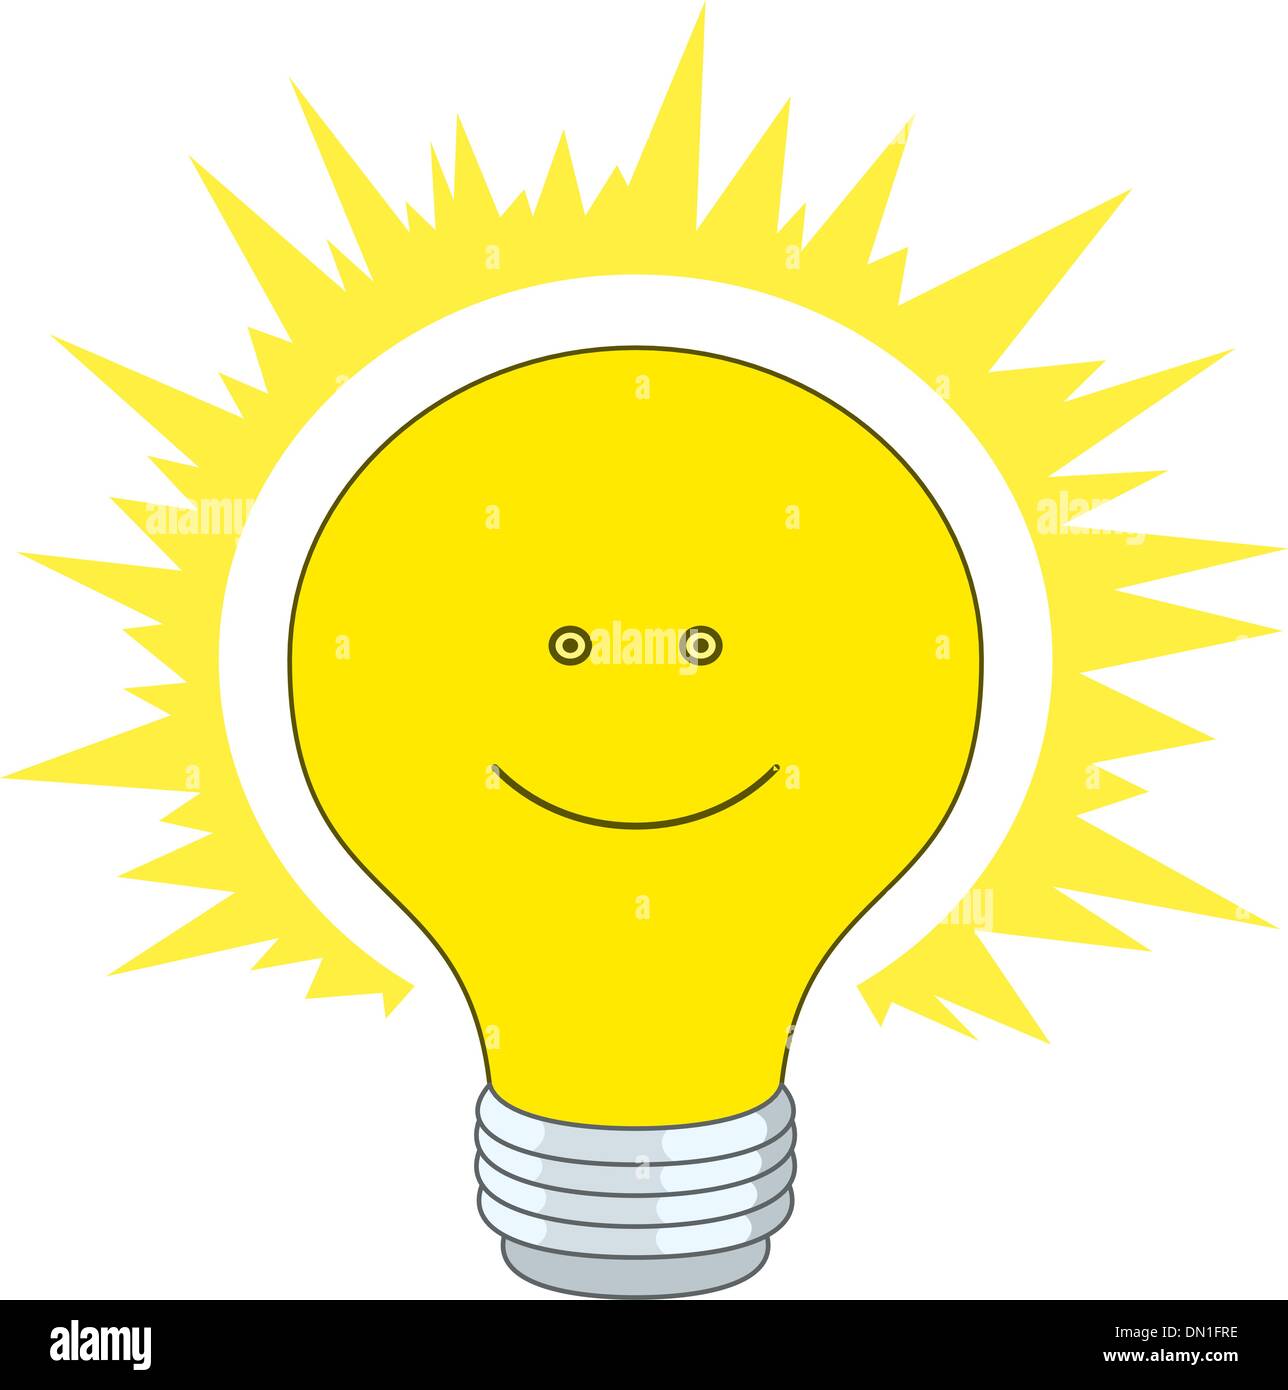 Здесь под желтым солнцем ламп. Лампочка улыбается. Лампочка и солнце. Лампочка с улыбкой. Лампочка для детей.